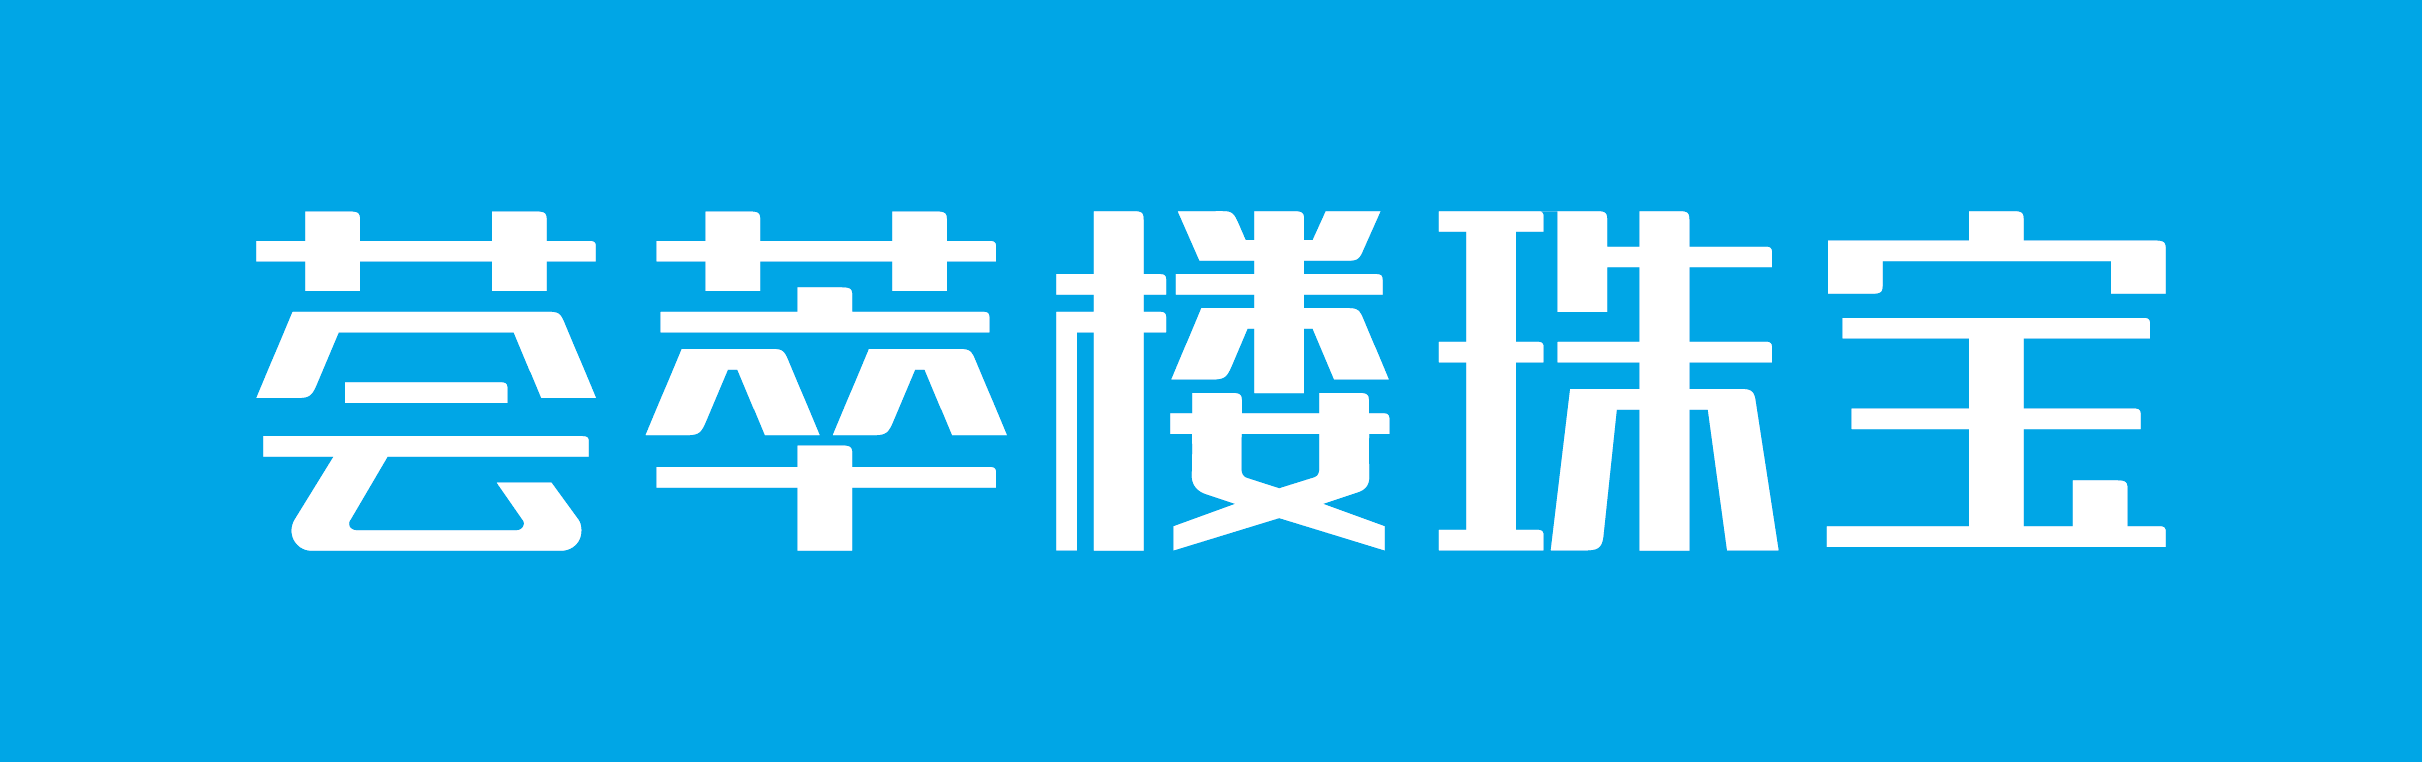 荟萃楼logo图片